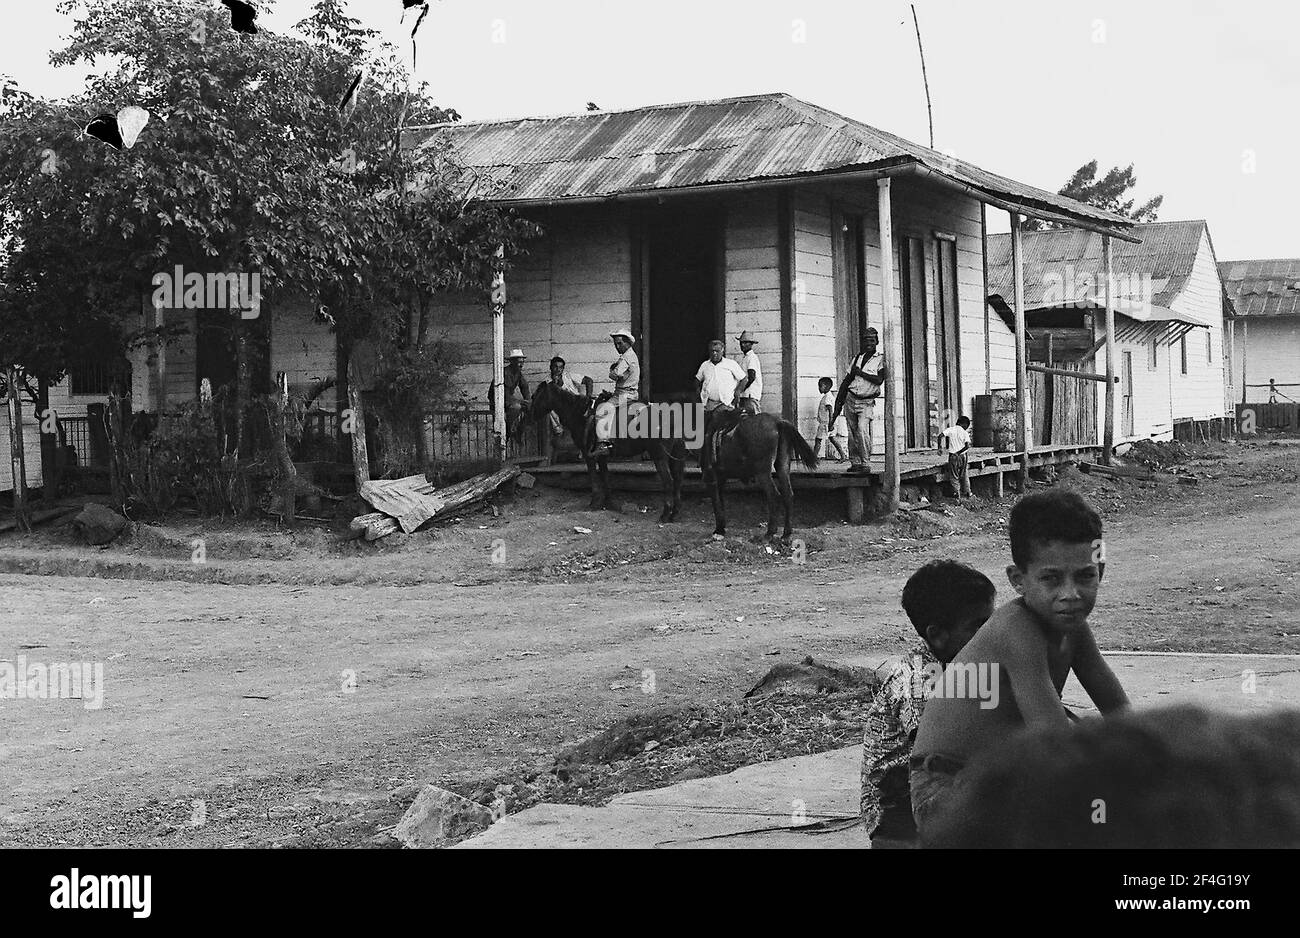 Des enfants sont rassemblés autour d'un bâtiment de fortune à Biran, Cuba, province de Holguin, 1963. De la collection de photographies Deena Stryker. () Banque D'Images